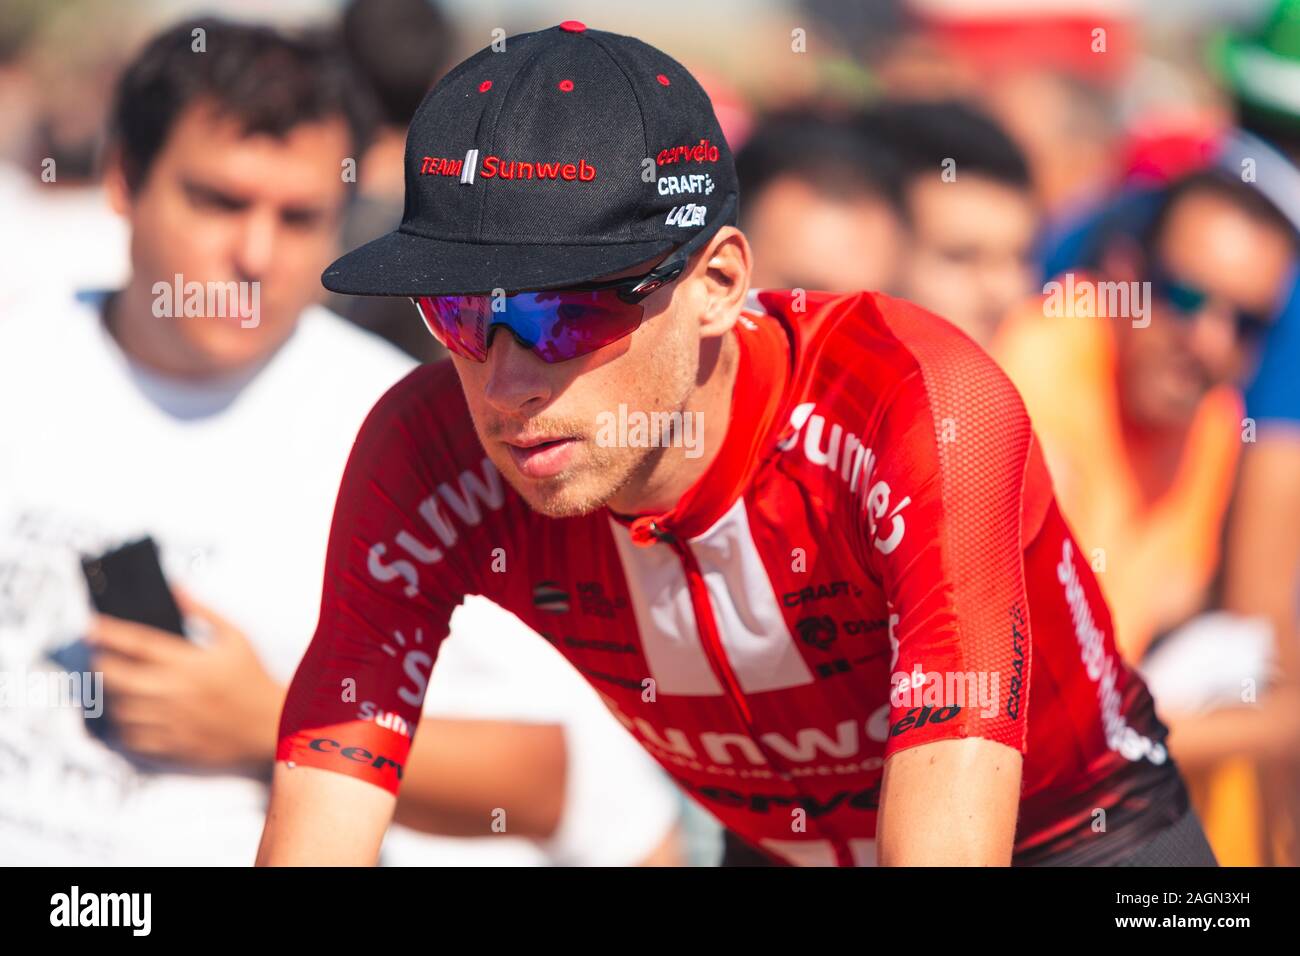 San Vicente de la Barquera, Spain-September 7, 2019: Martijn TUSVELD, ciclista del team La Ragnatela Solare durante la fase 14 di la Vuelta a España. Foto Stock